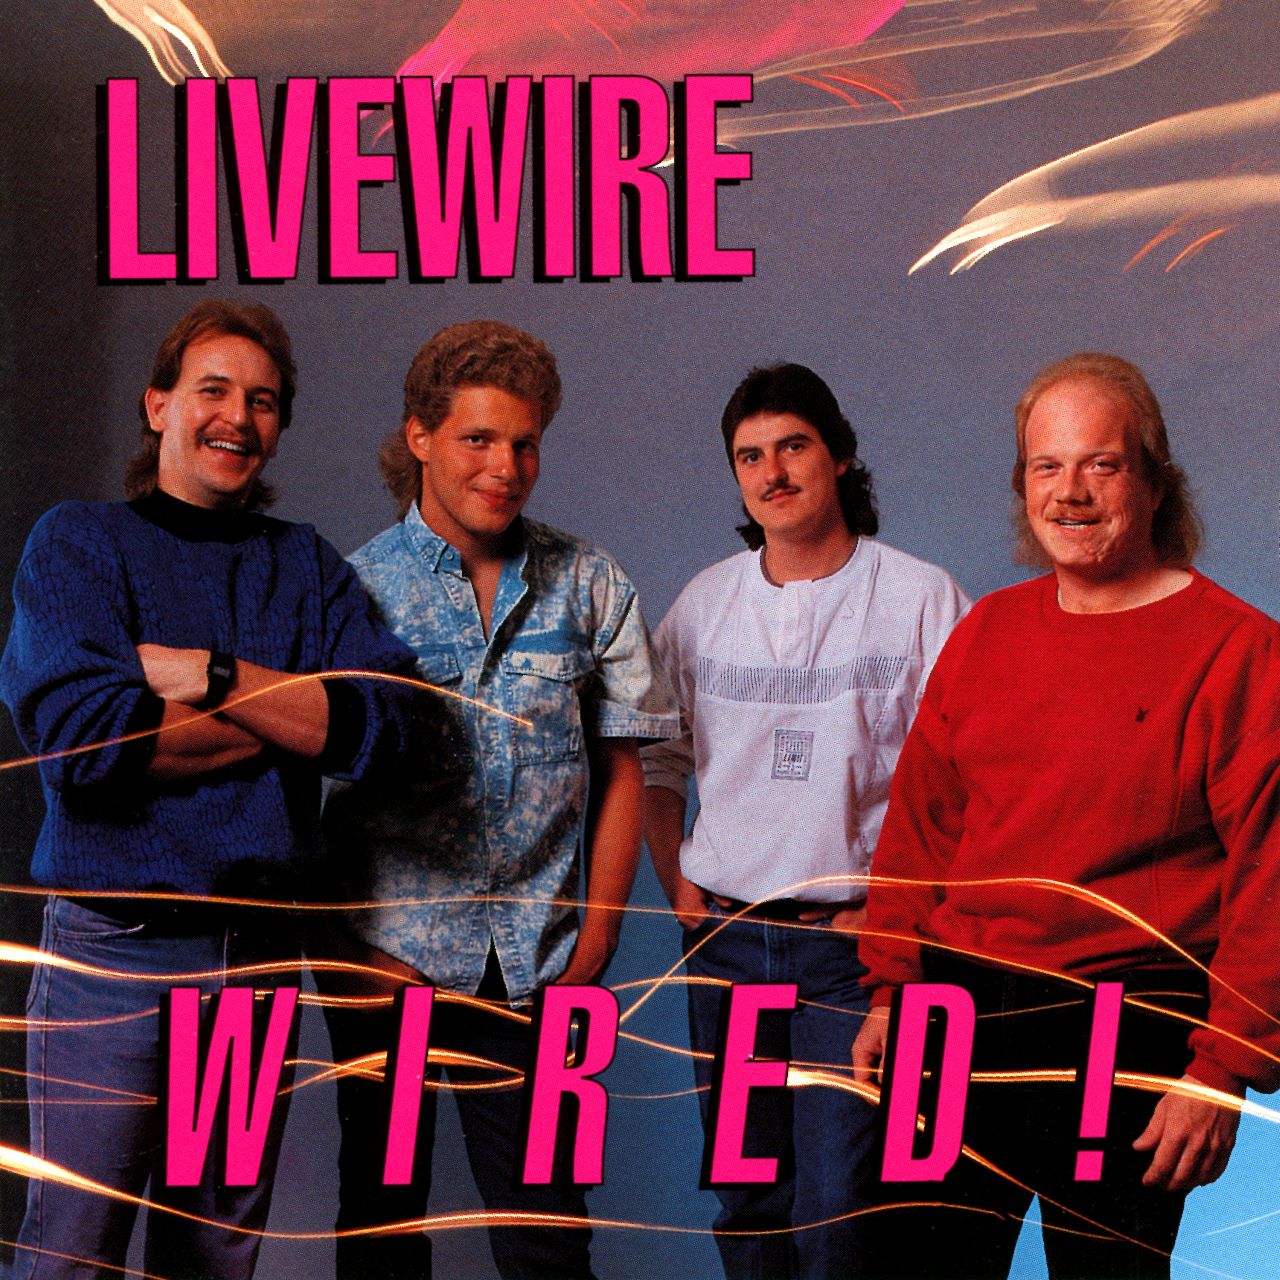 Livewire - Wired cover album